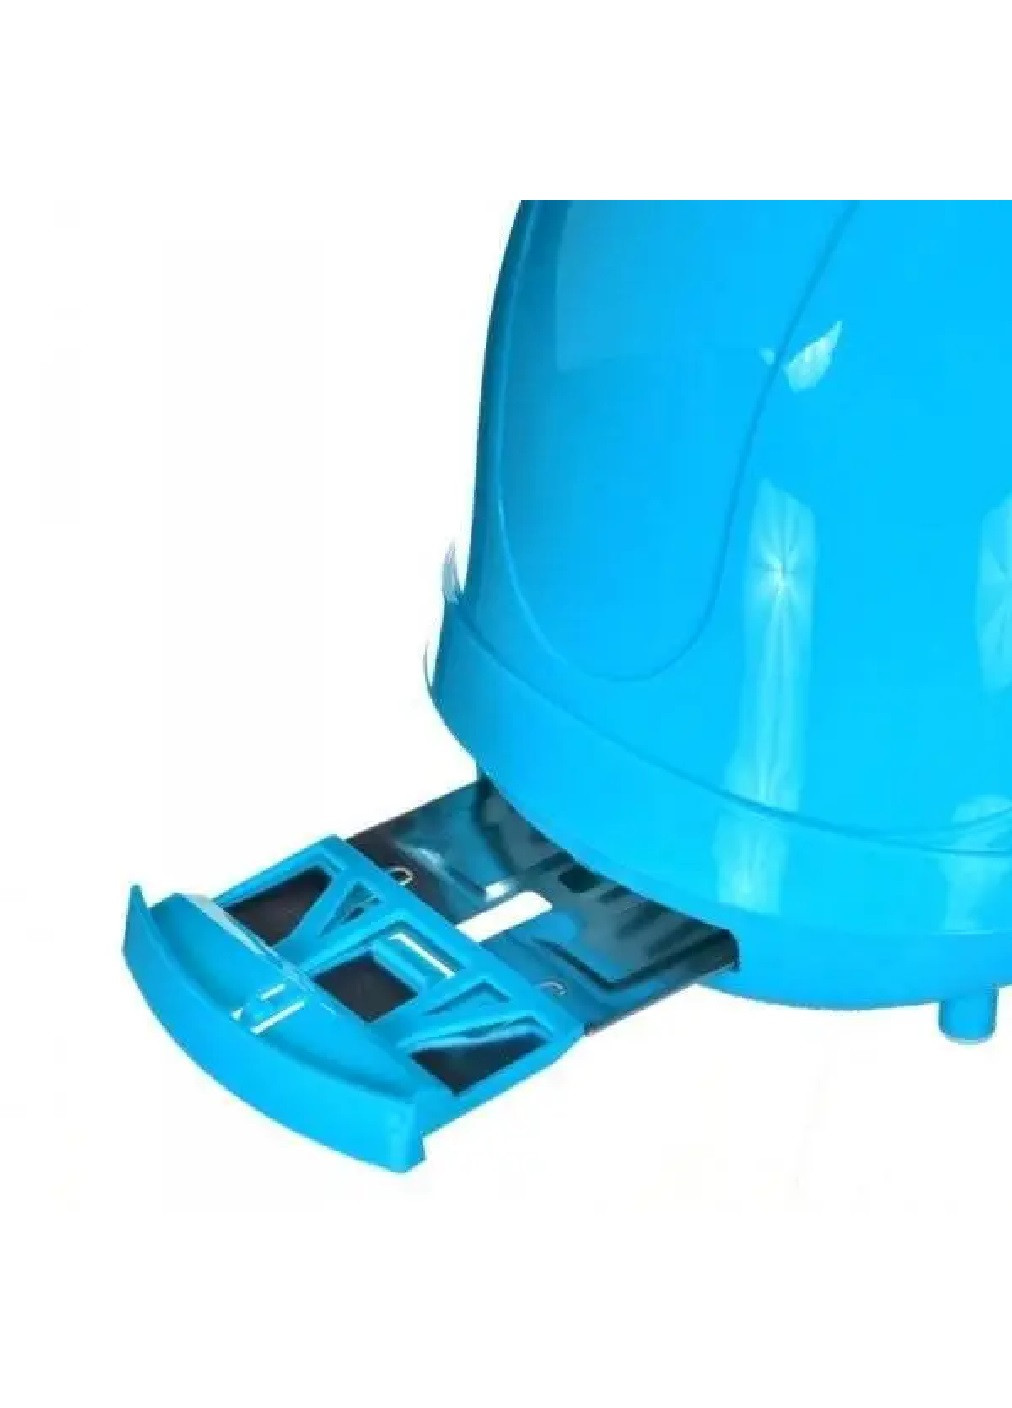 Тостер аппарат машинка прибор для поджарки поджаривания хлеба на 2 тоста компактный портативный 750 Вт (475164-Prob) Синий Unbranded (262596925)